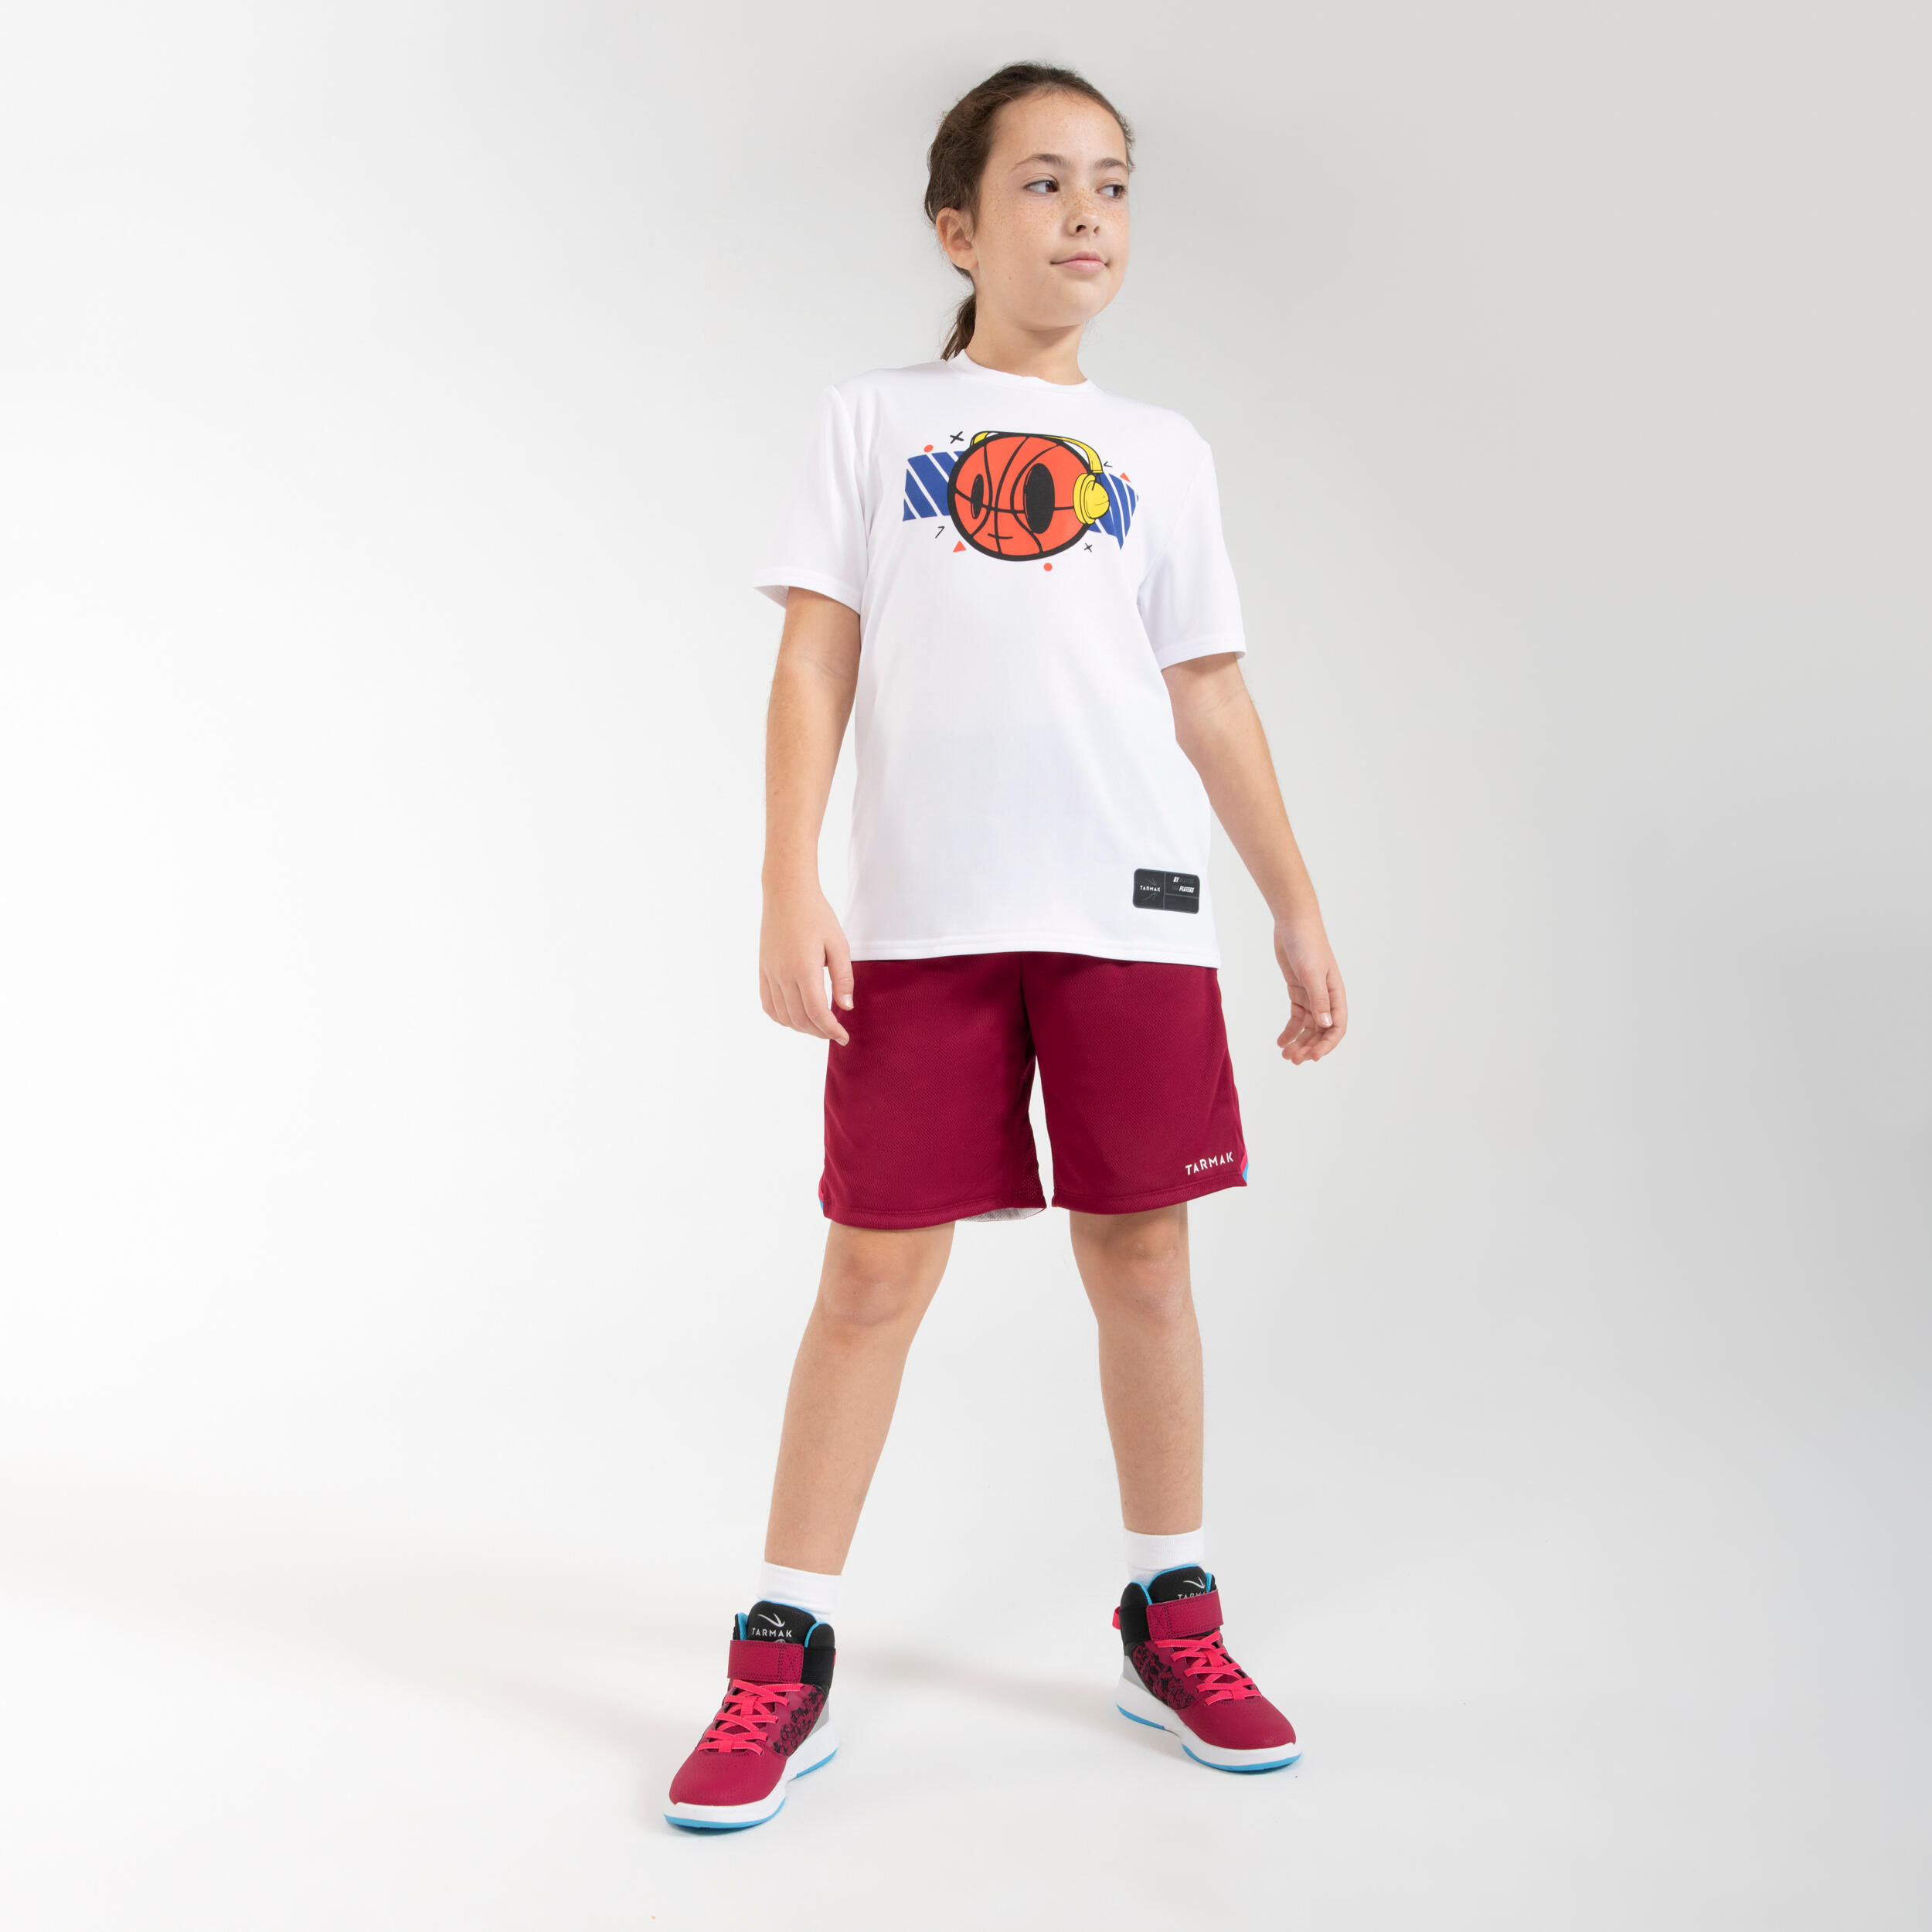 Kids' Beginner Basketball Shoes SE100 - Burgundy 7/7